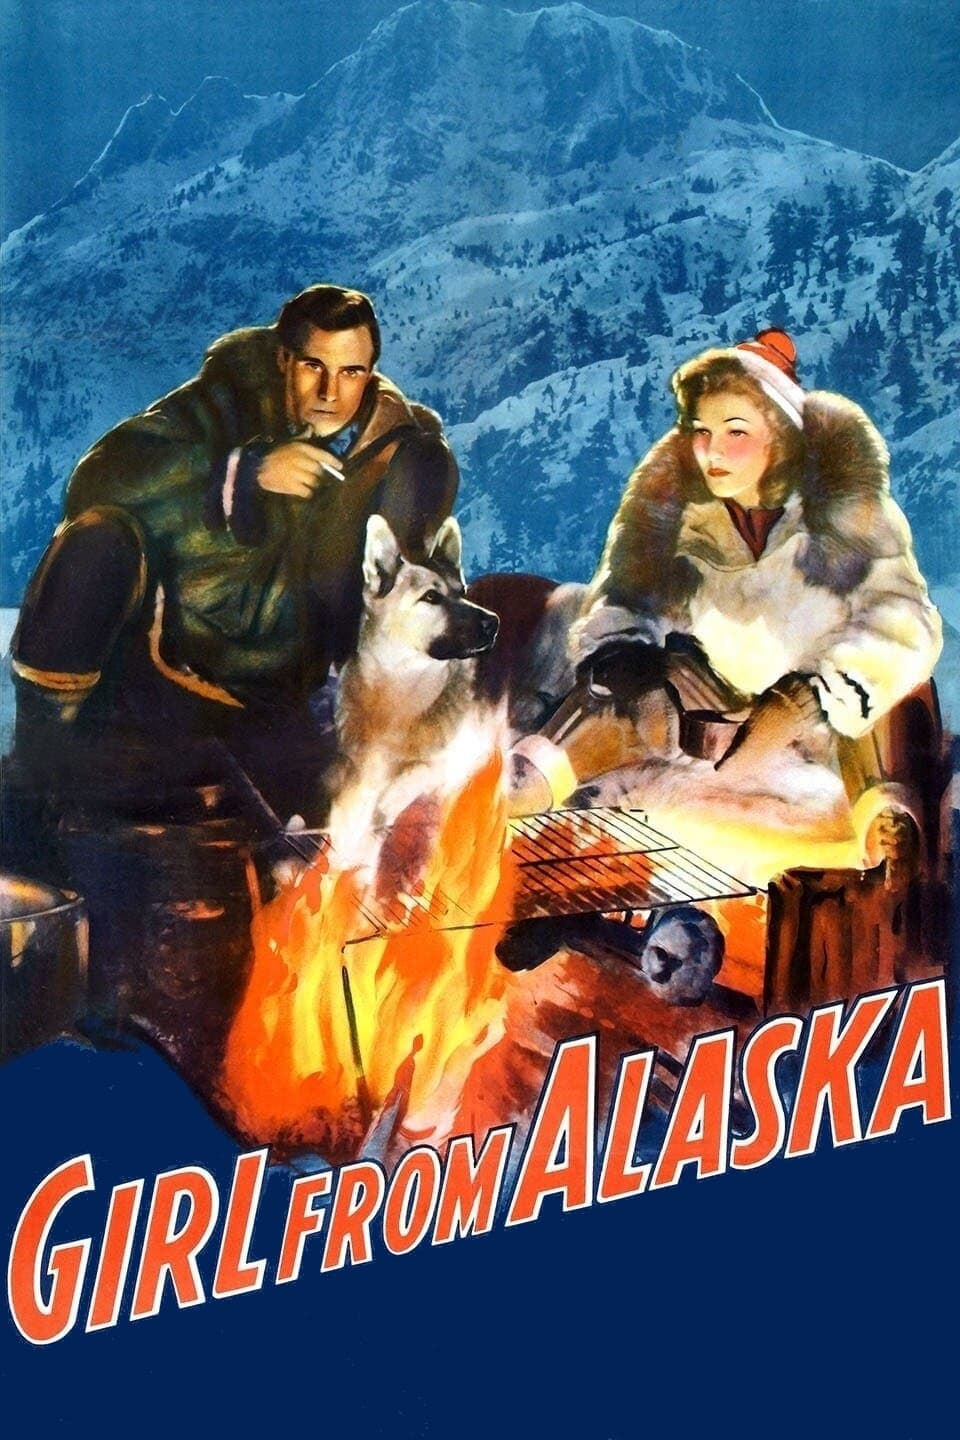 The Girl from Alaska